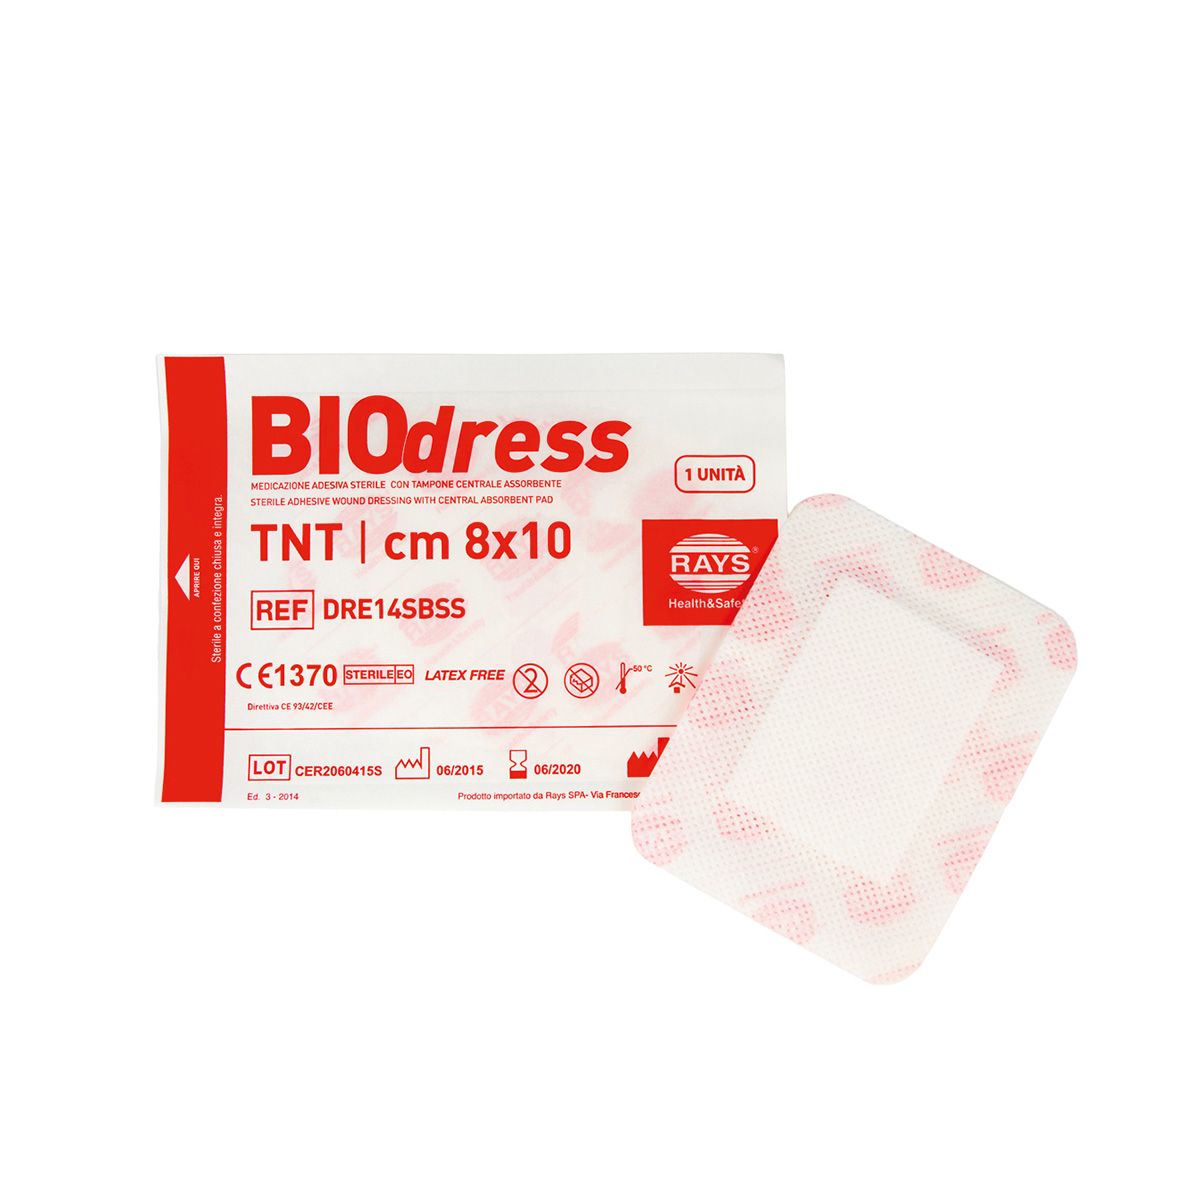 Medicazione adesiva sterile in TNT